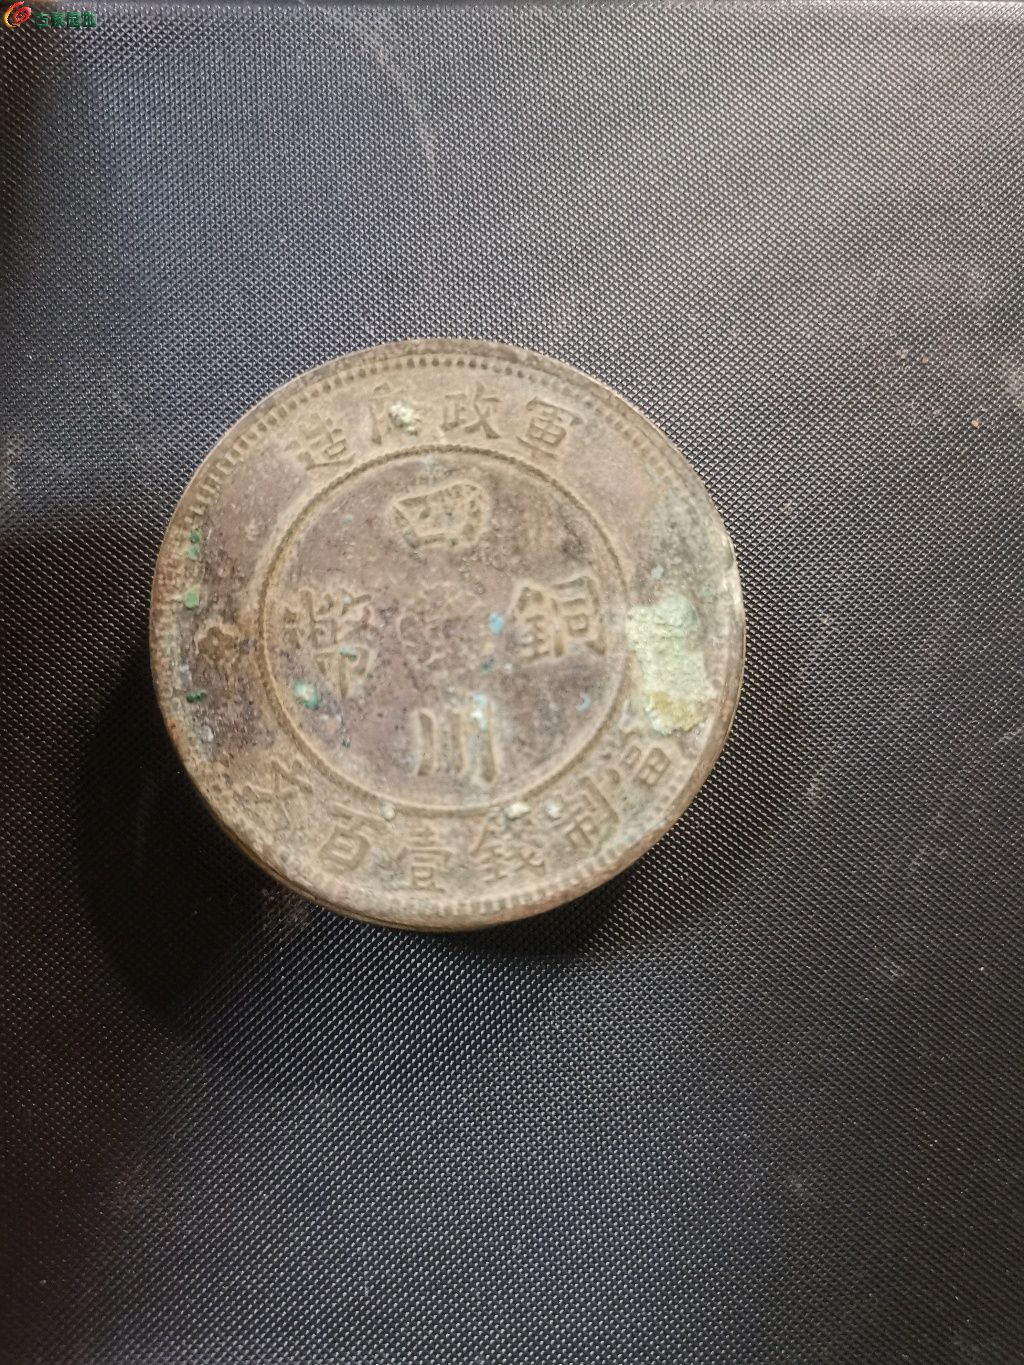 四川一百文铜币- 铜圆和机制币- 园地拍卖